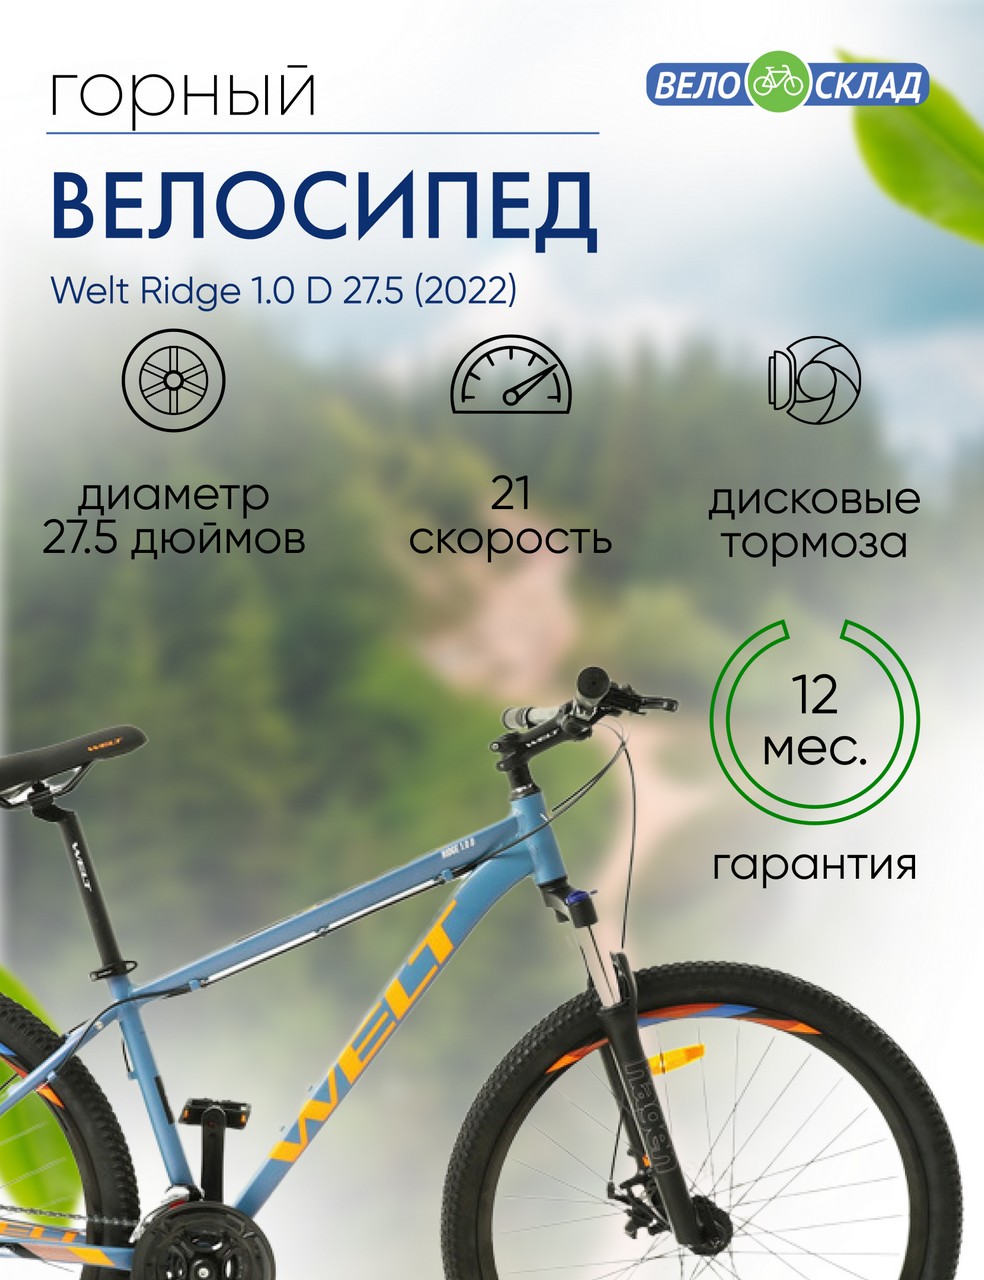 Горный велосипед Welt Ridge 1.0 D 27.5, год 2022, цвет Синий, ростовка 20